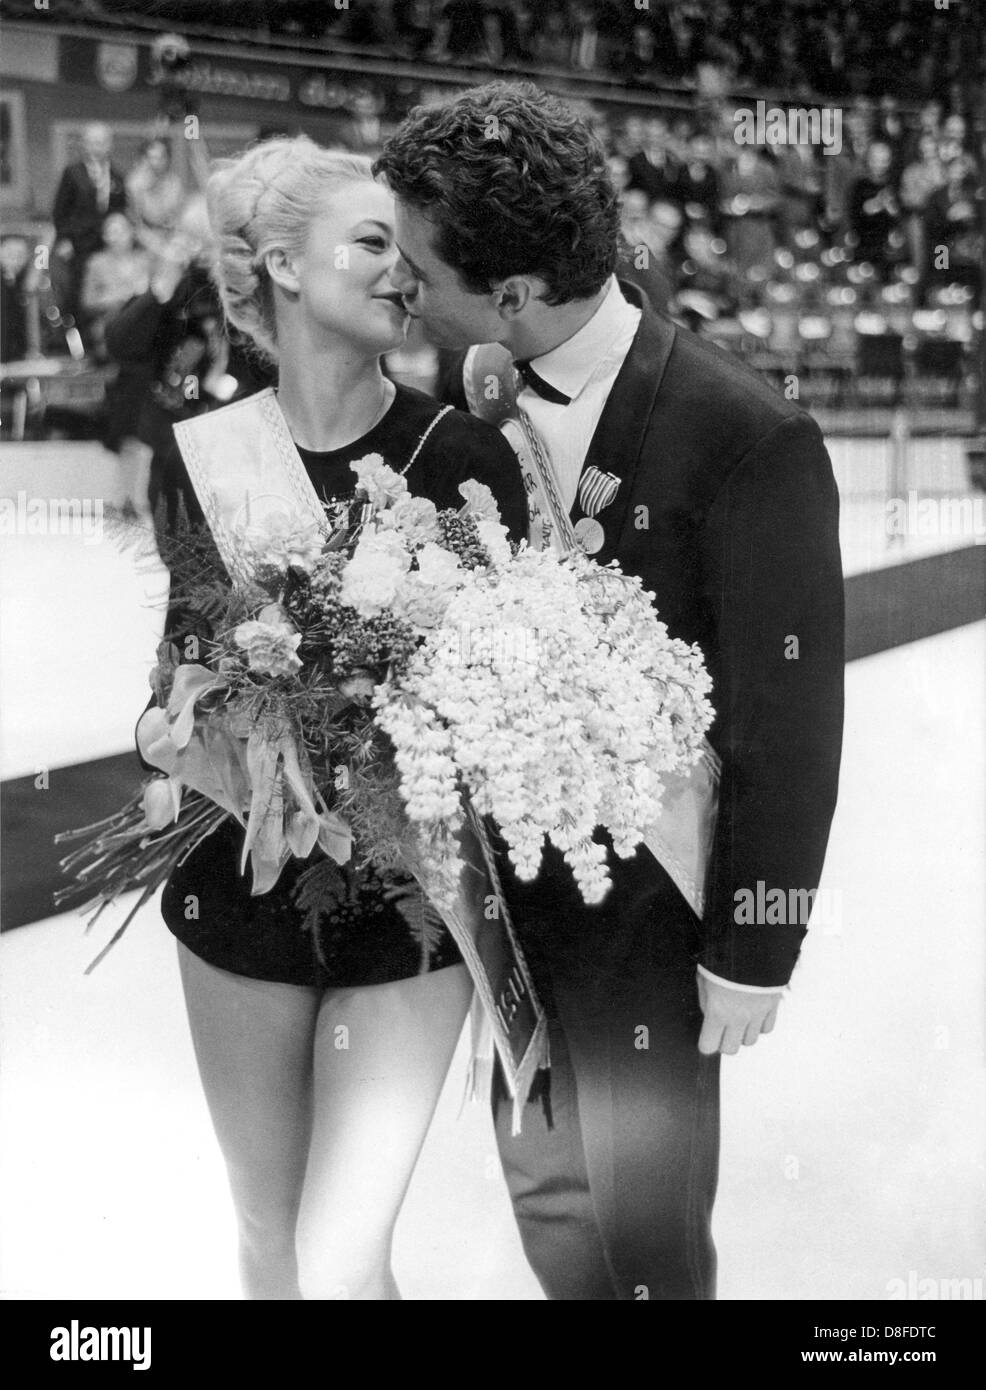 Marika Kilius e Hans-Jürgen Bäumler, i vecchi e i nuovi campioni del mondo nel ghiaccio pattinaggio artistico, kiss dopo la cerimonia della vittoria a Dortmund il 26 di febbraio nel 1964. Foto Stock